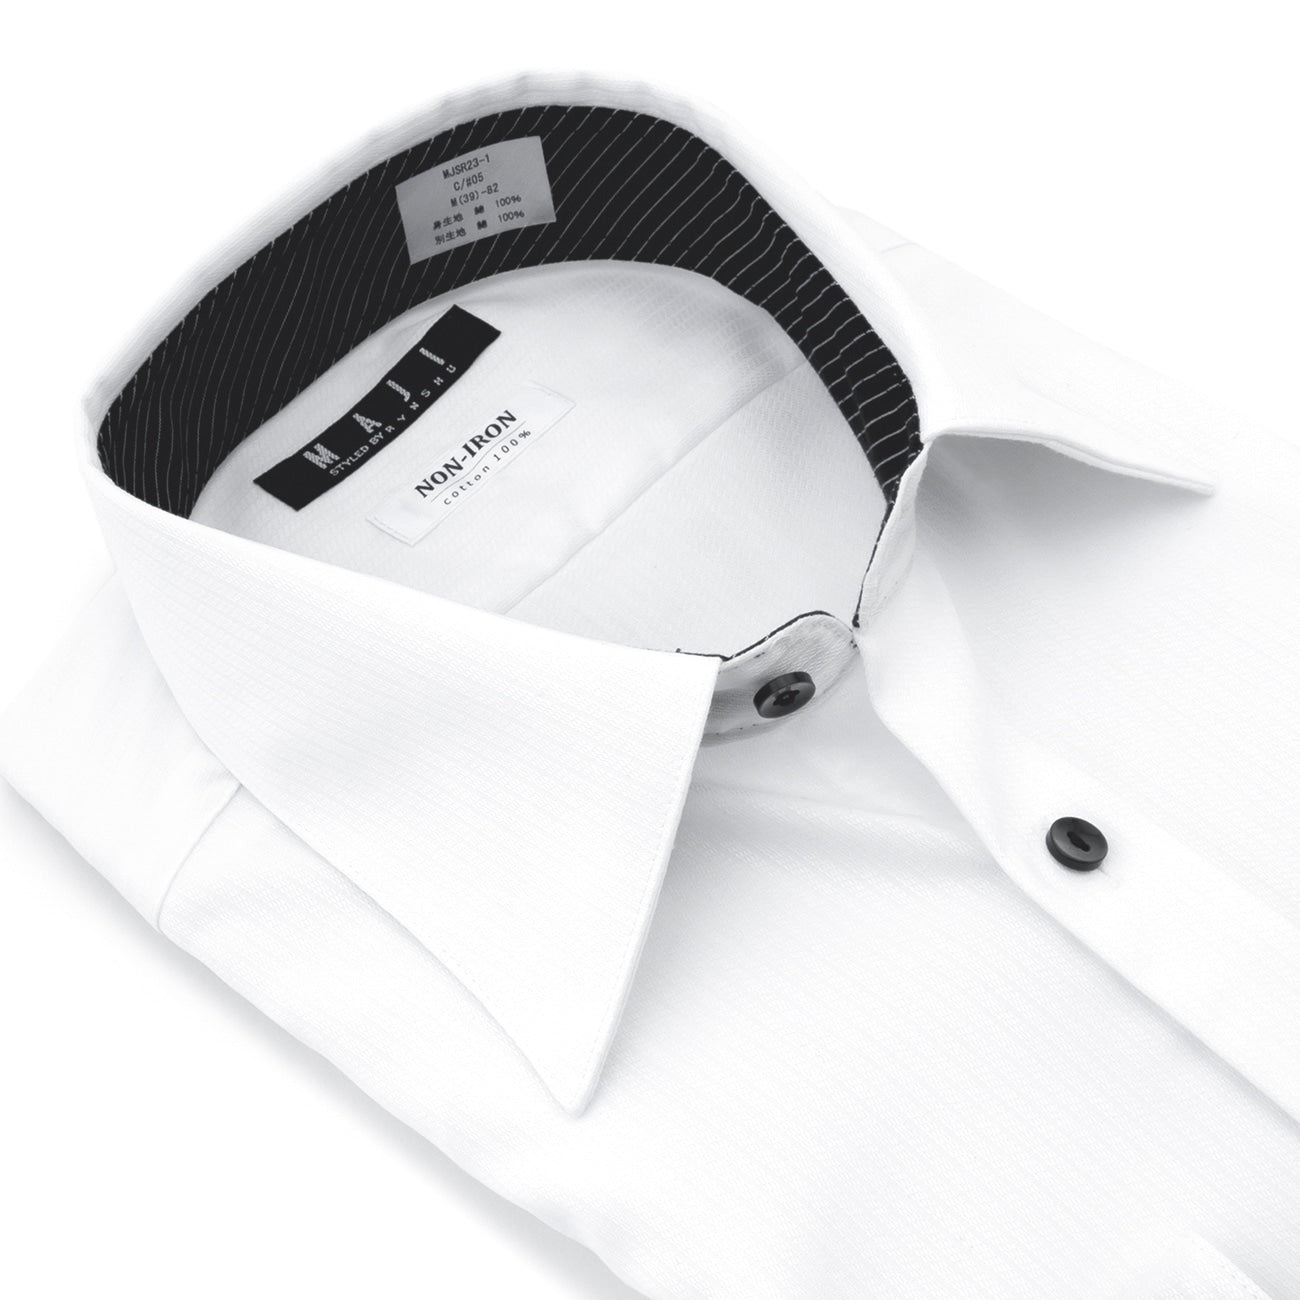 MAJI 免燙襯衫棉質彈力白色斜紋布標準領 - 修身版型<br>